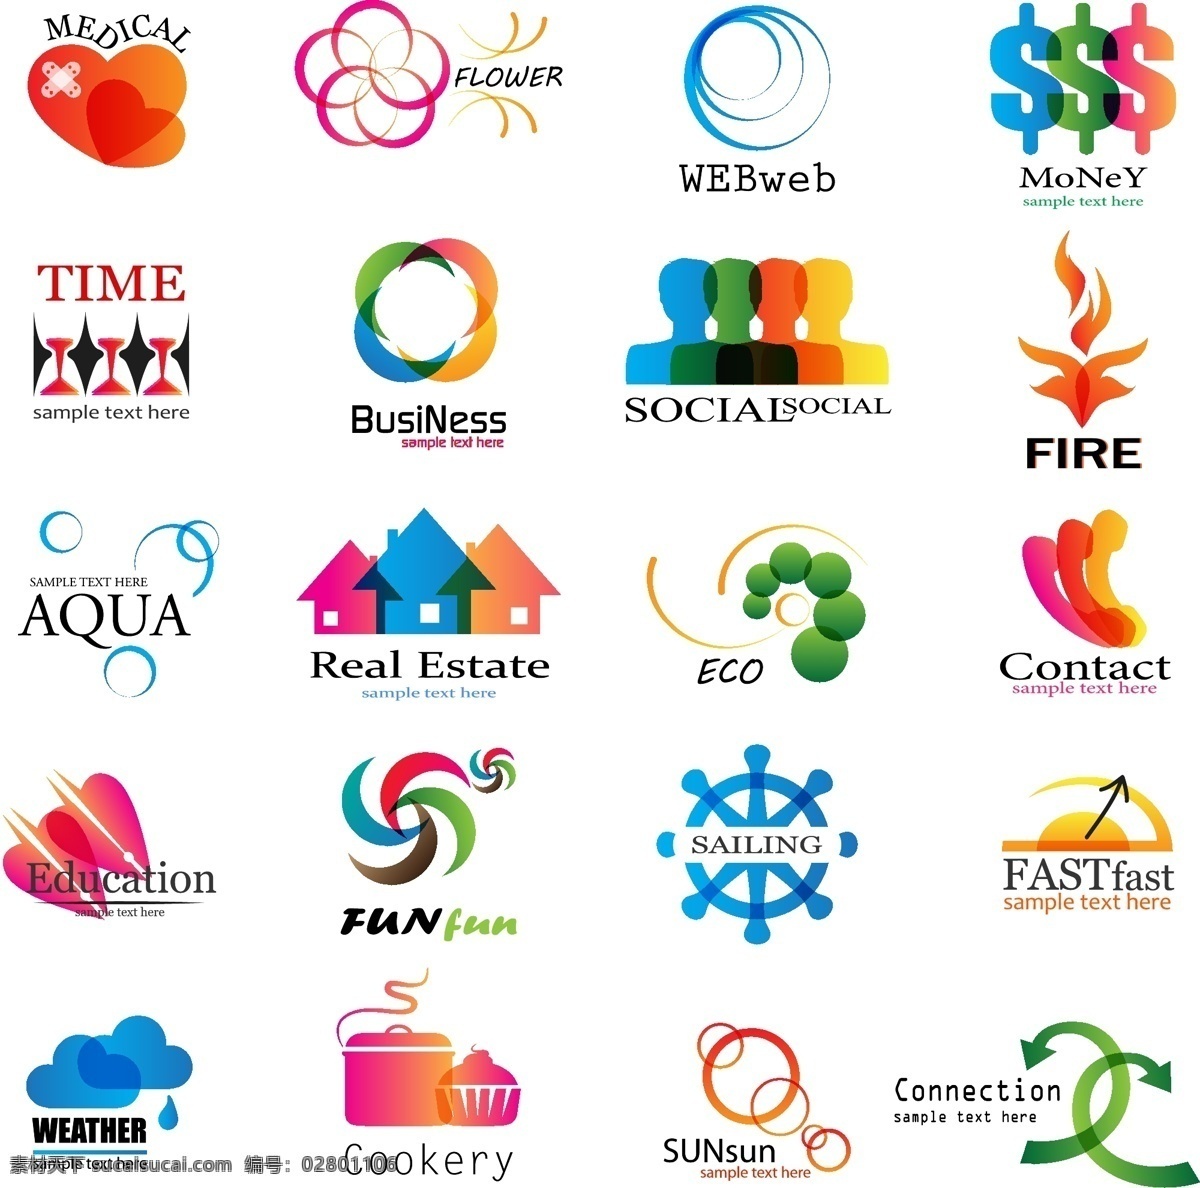 美元 箭头 梦幻 logo 创意 logo图形 标志设计 商标设计 企业logo 公司logo 行业标志 标志图标 矢量素材 白色